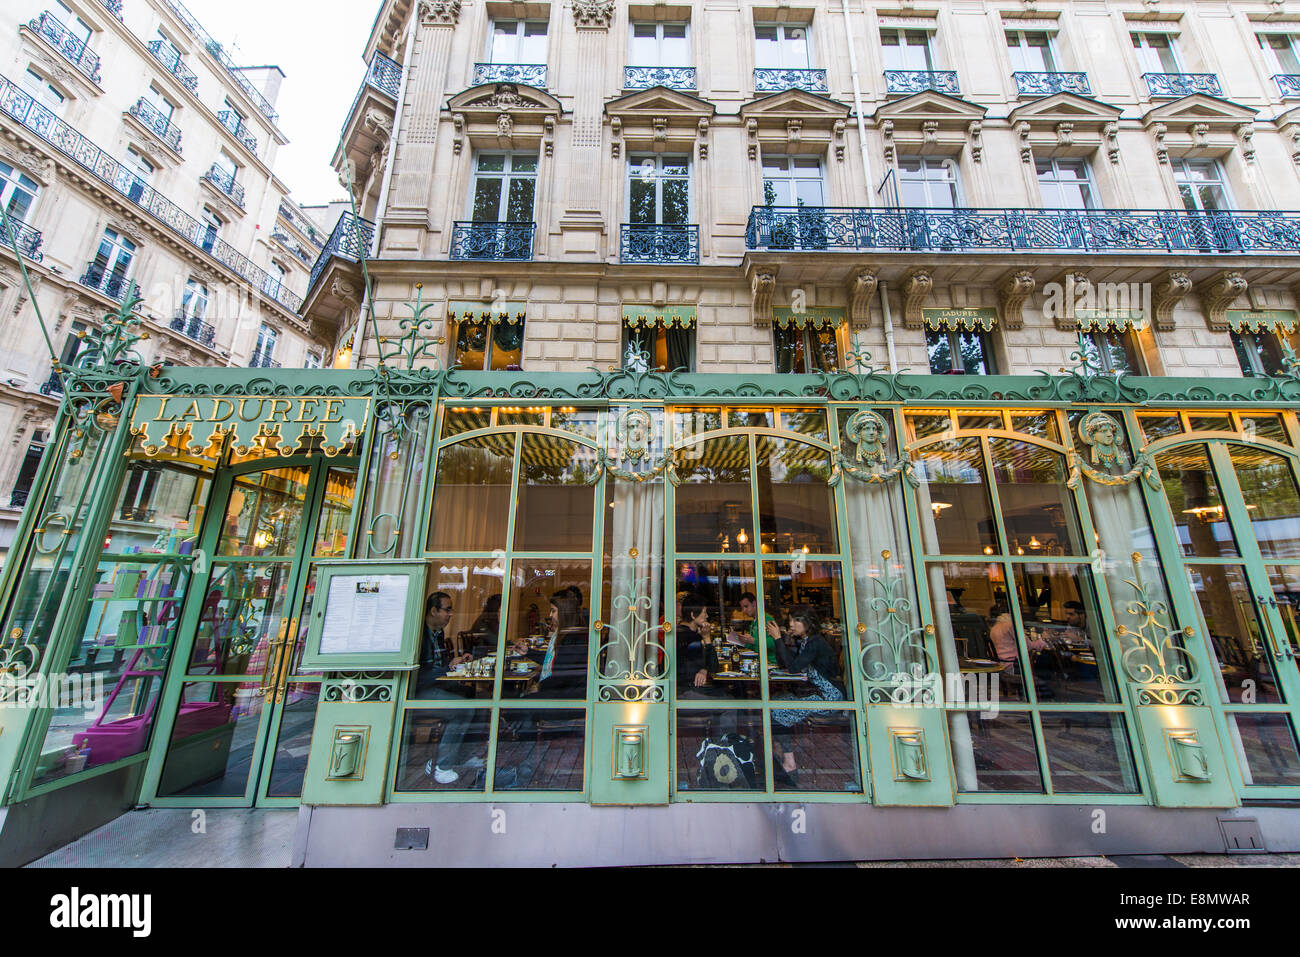 Ladurée shop front on the Champs-Élysées, Paris, France Stock Photo - Alamy